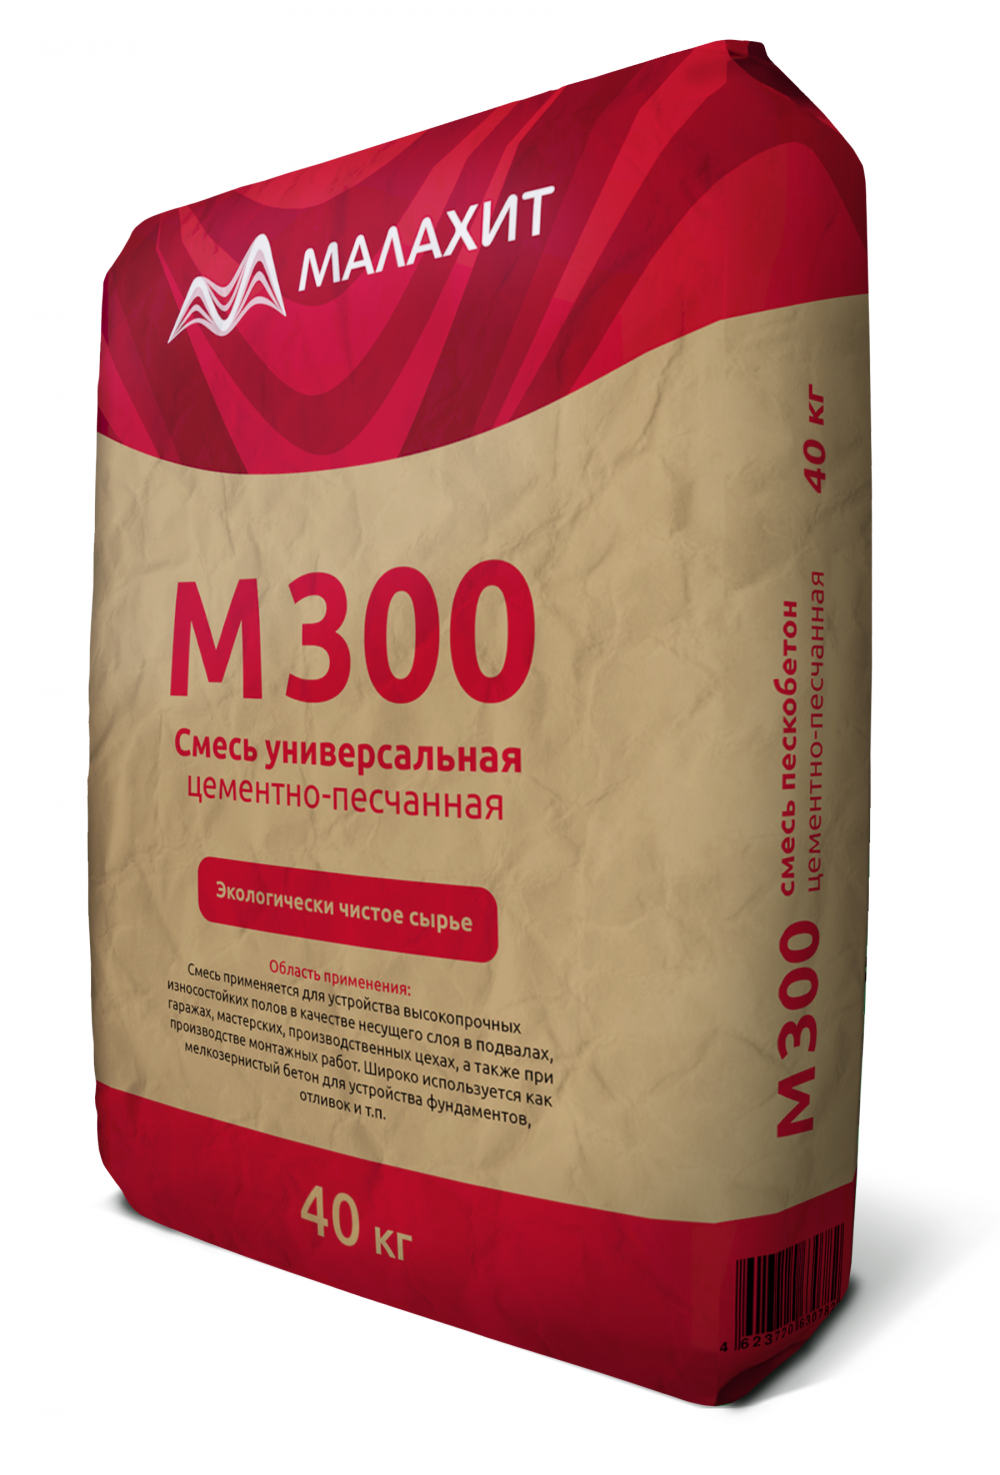 Сухая смесь М300 «Малахит» пескобетон ГОСТ 31357-2007, 40кг